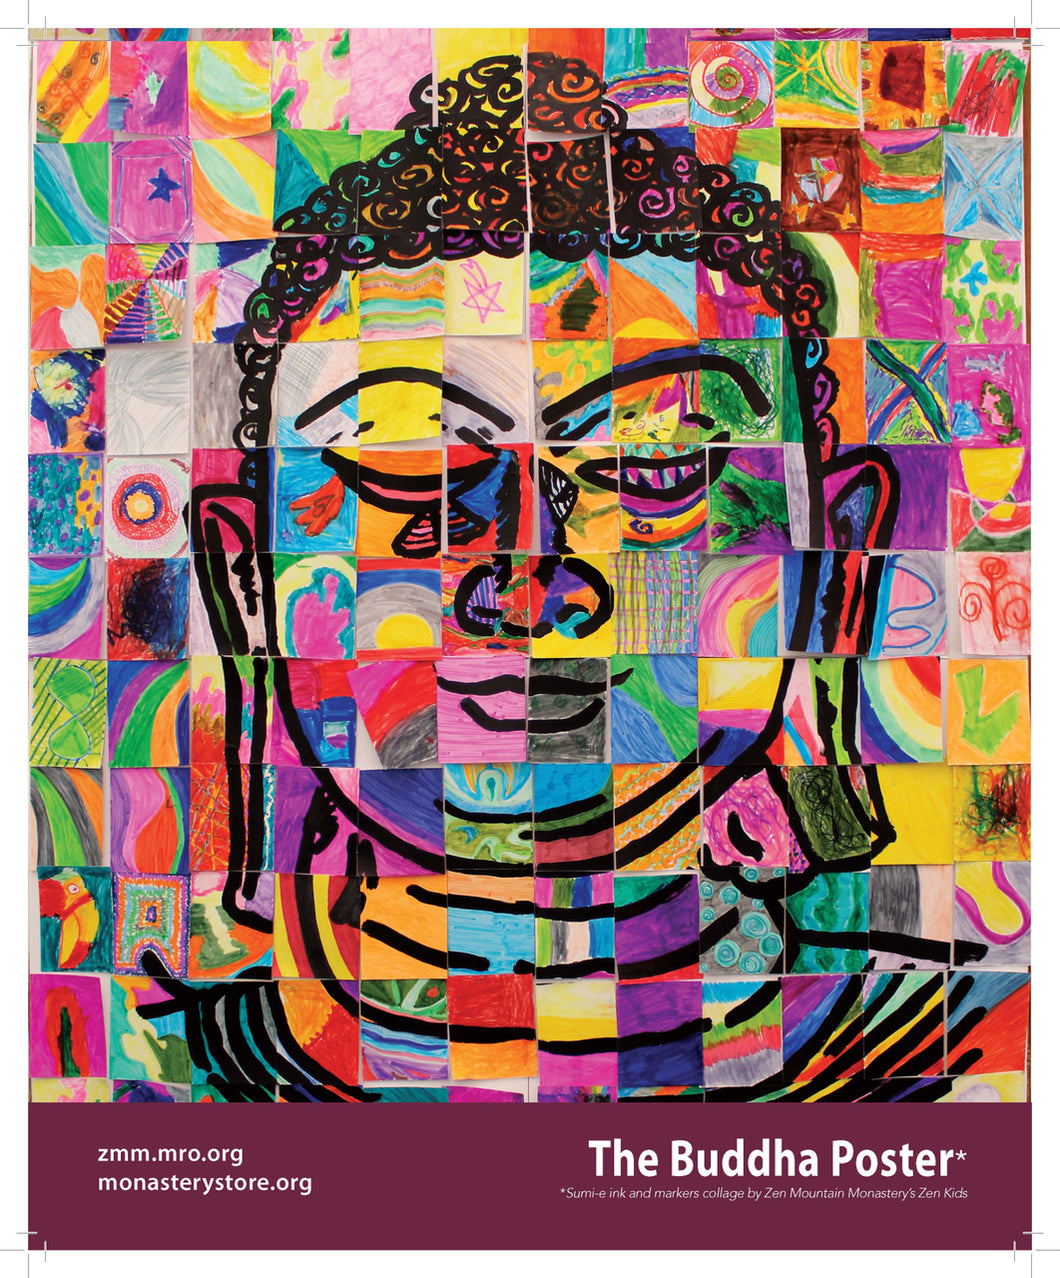 Mosaic Buddha Poster - The Monastery Store